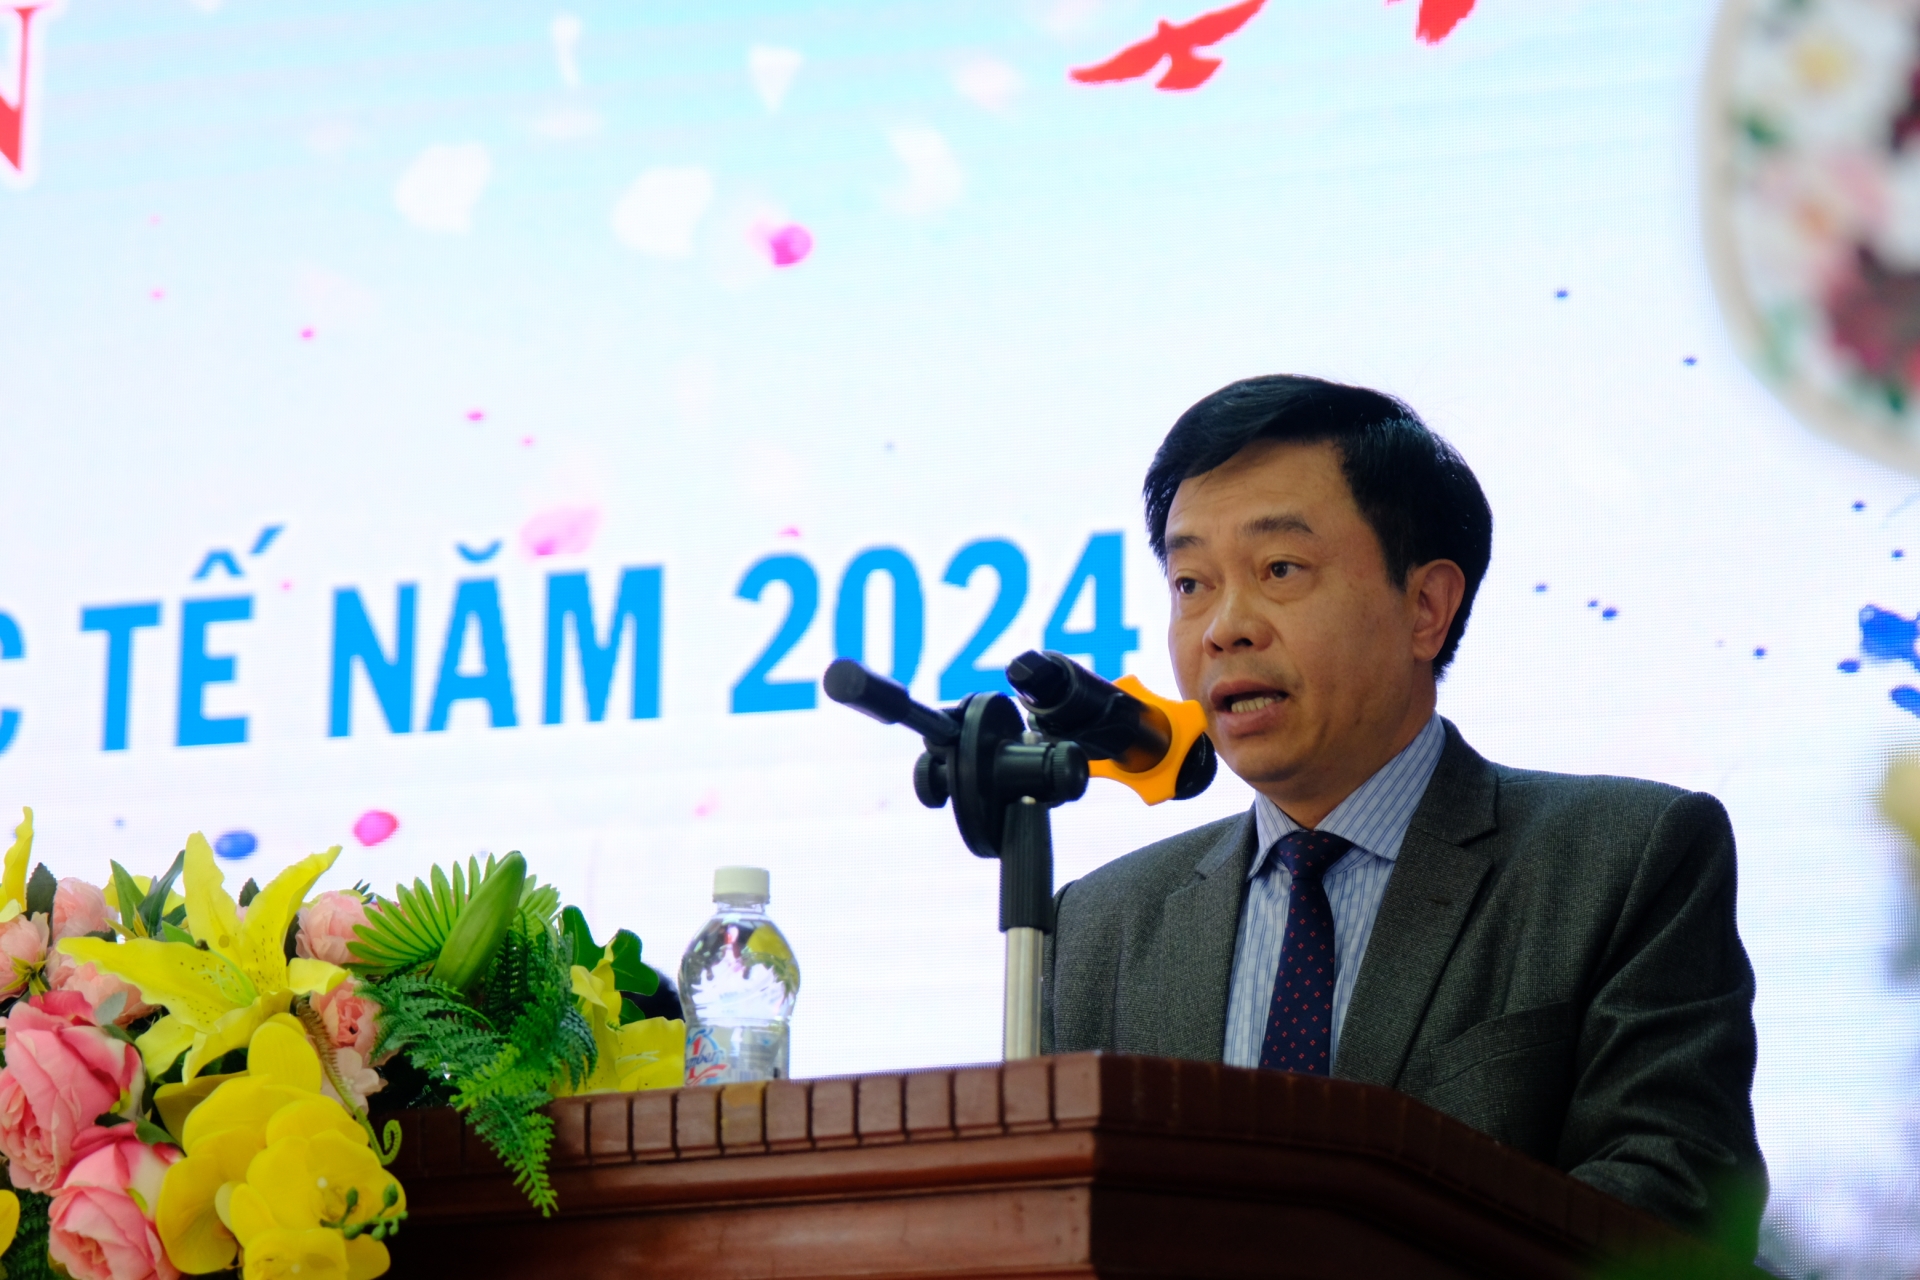 Đồng chí Nguyễn Trung Kiên  - Giám đốc Sở Văn hóa, thể thao và du lịch tỉnh Lâm Đồng phát biểu, giao nhiệm vụ cho Đoàn Thể thao Lâm Đồng.